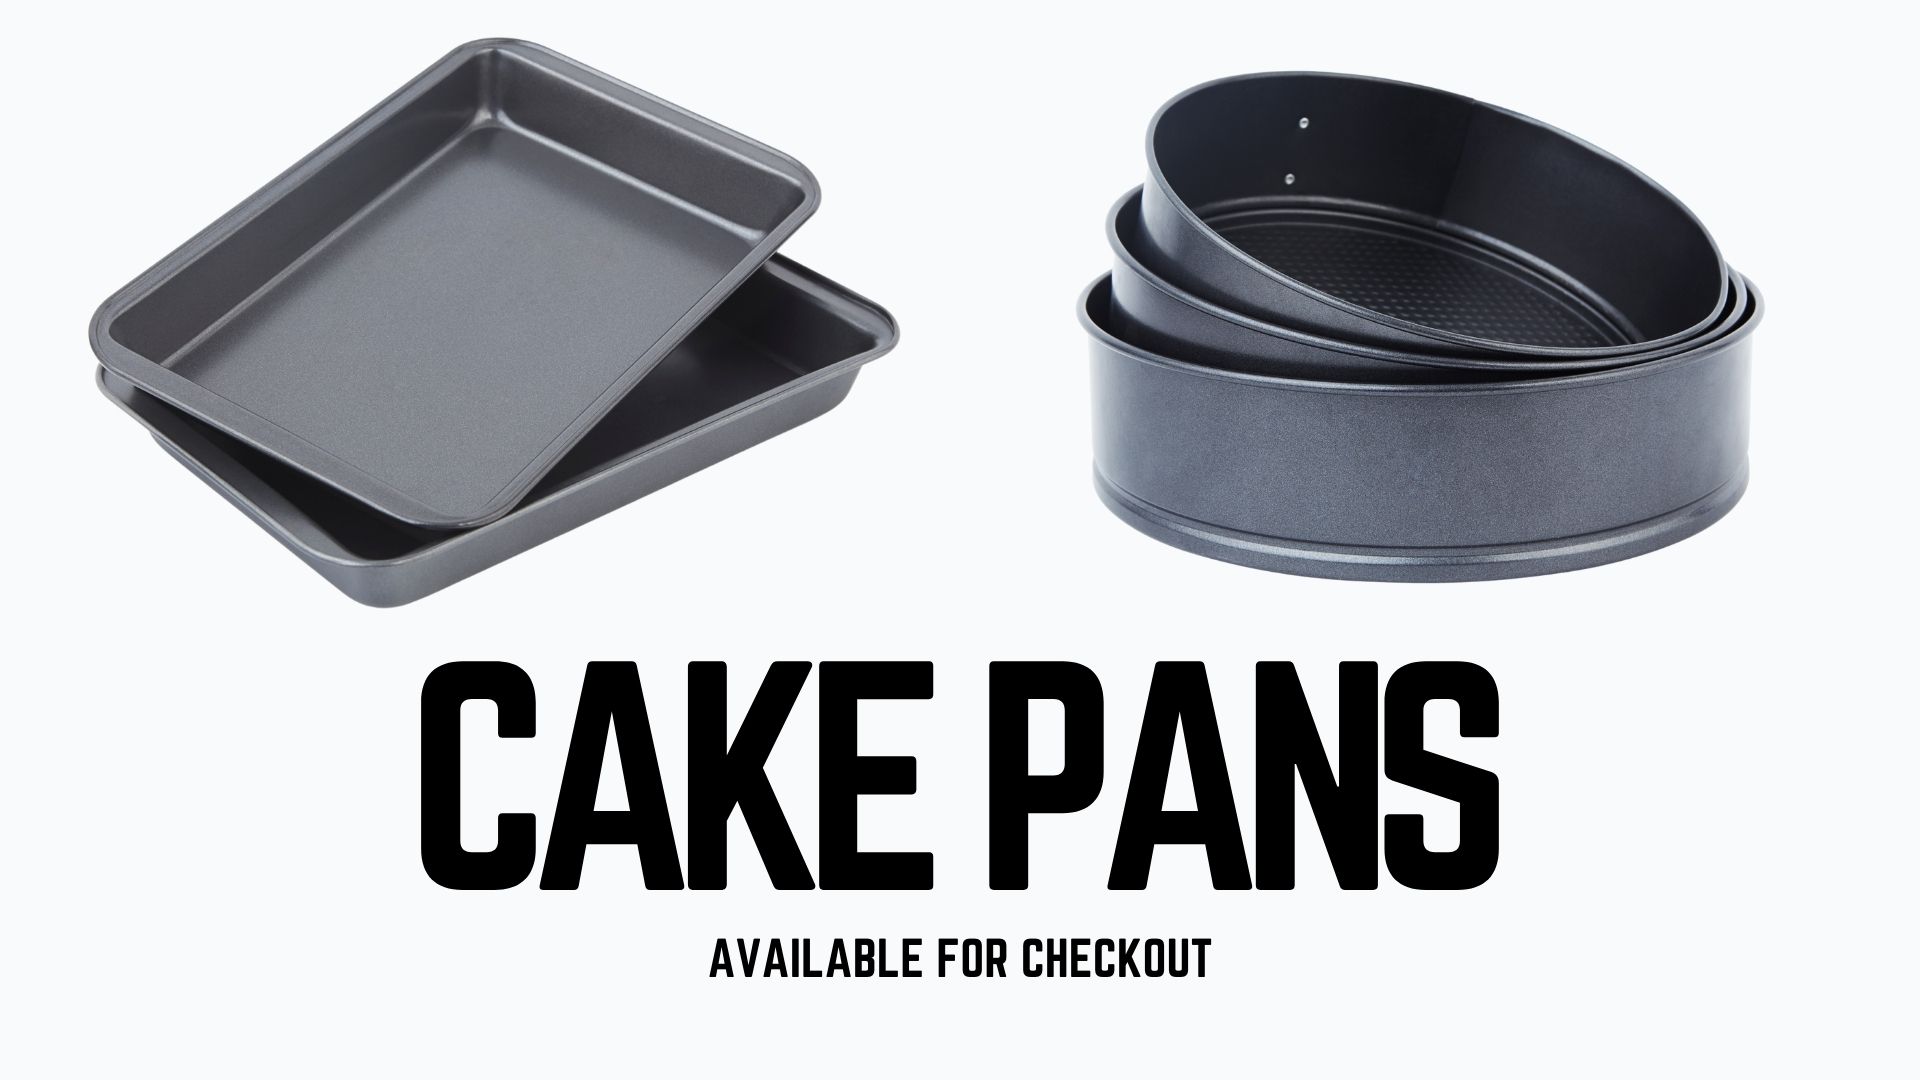 Cake Pans